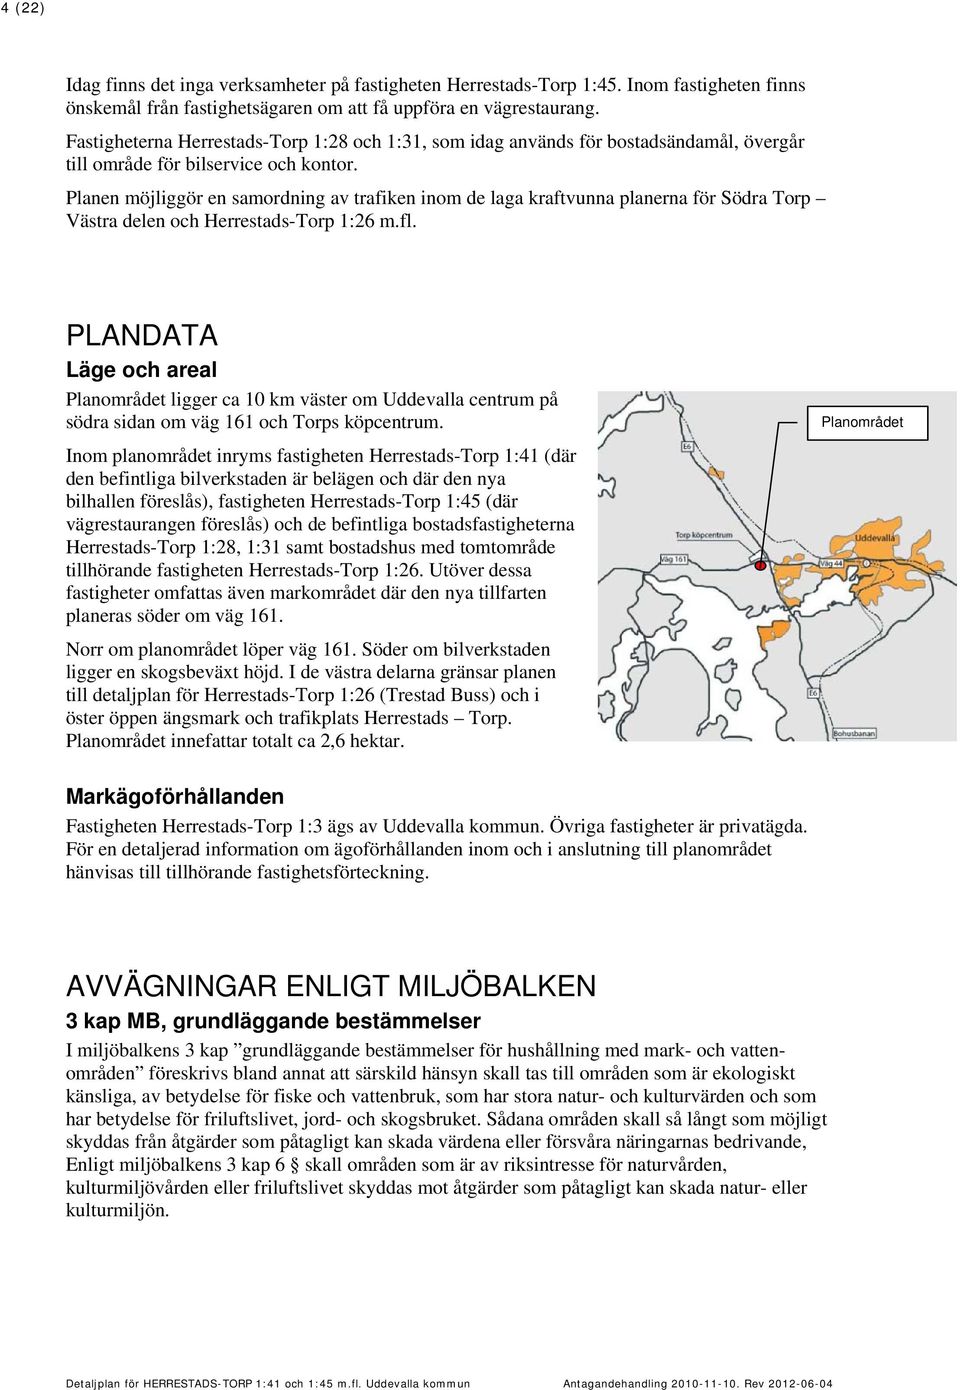 Planen möjliggör en samordning av trafiken inom de laga kraftvunna planerna för Södra Torp Västra delen och Herrestads-Torp 1:26 m.fl.